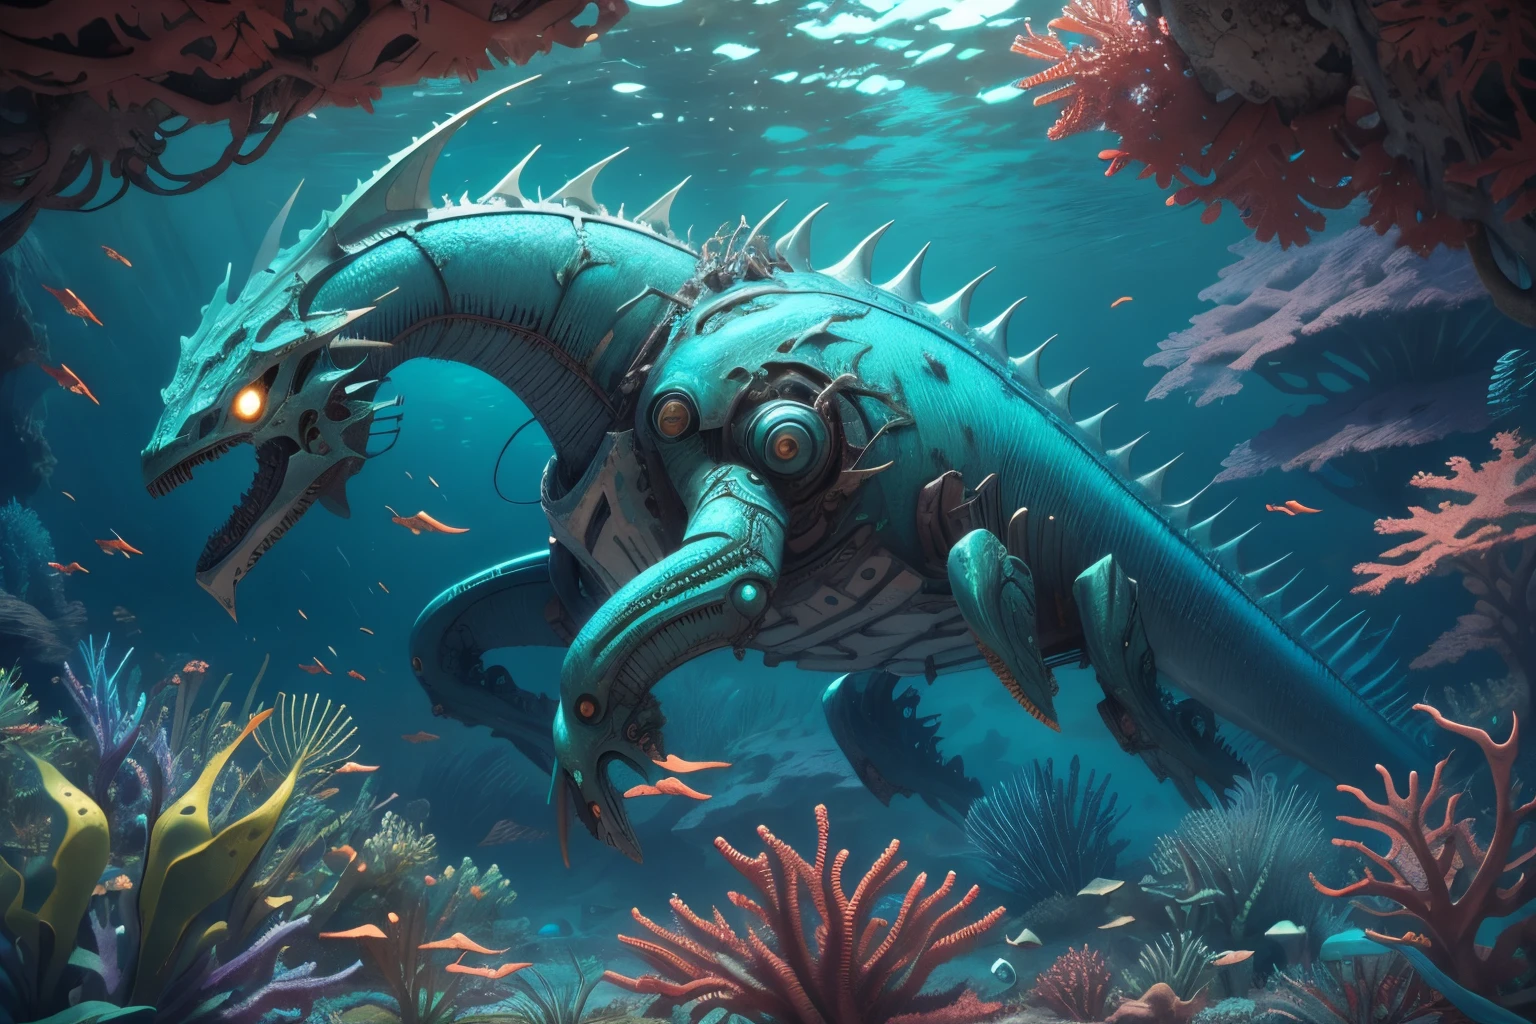 embaixo da agua,alta qualidade, ,Mech4nim4lAI, Dragão do mar :robô:0.45] ,cenário,coral cintilante,campo de batalha,destroços,nave alienígena,Lazeres